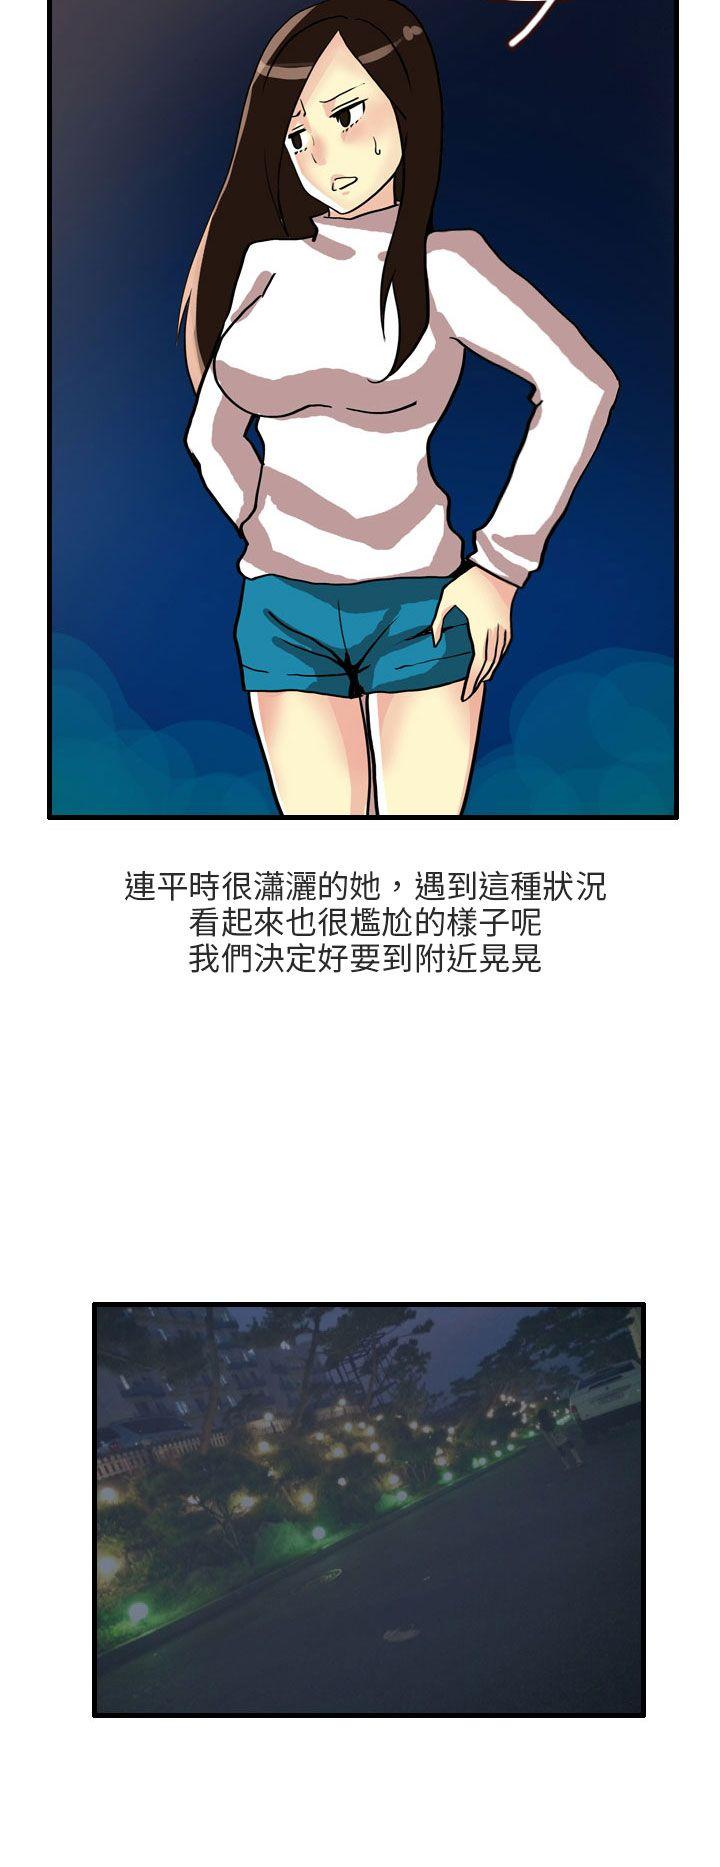 秘密Story第二季  四人约会的露营(下) 漫画图片6.jpg